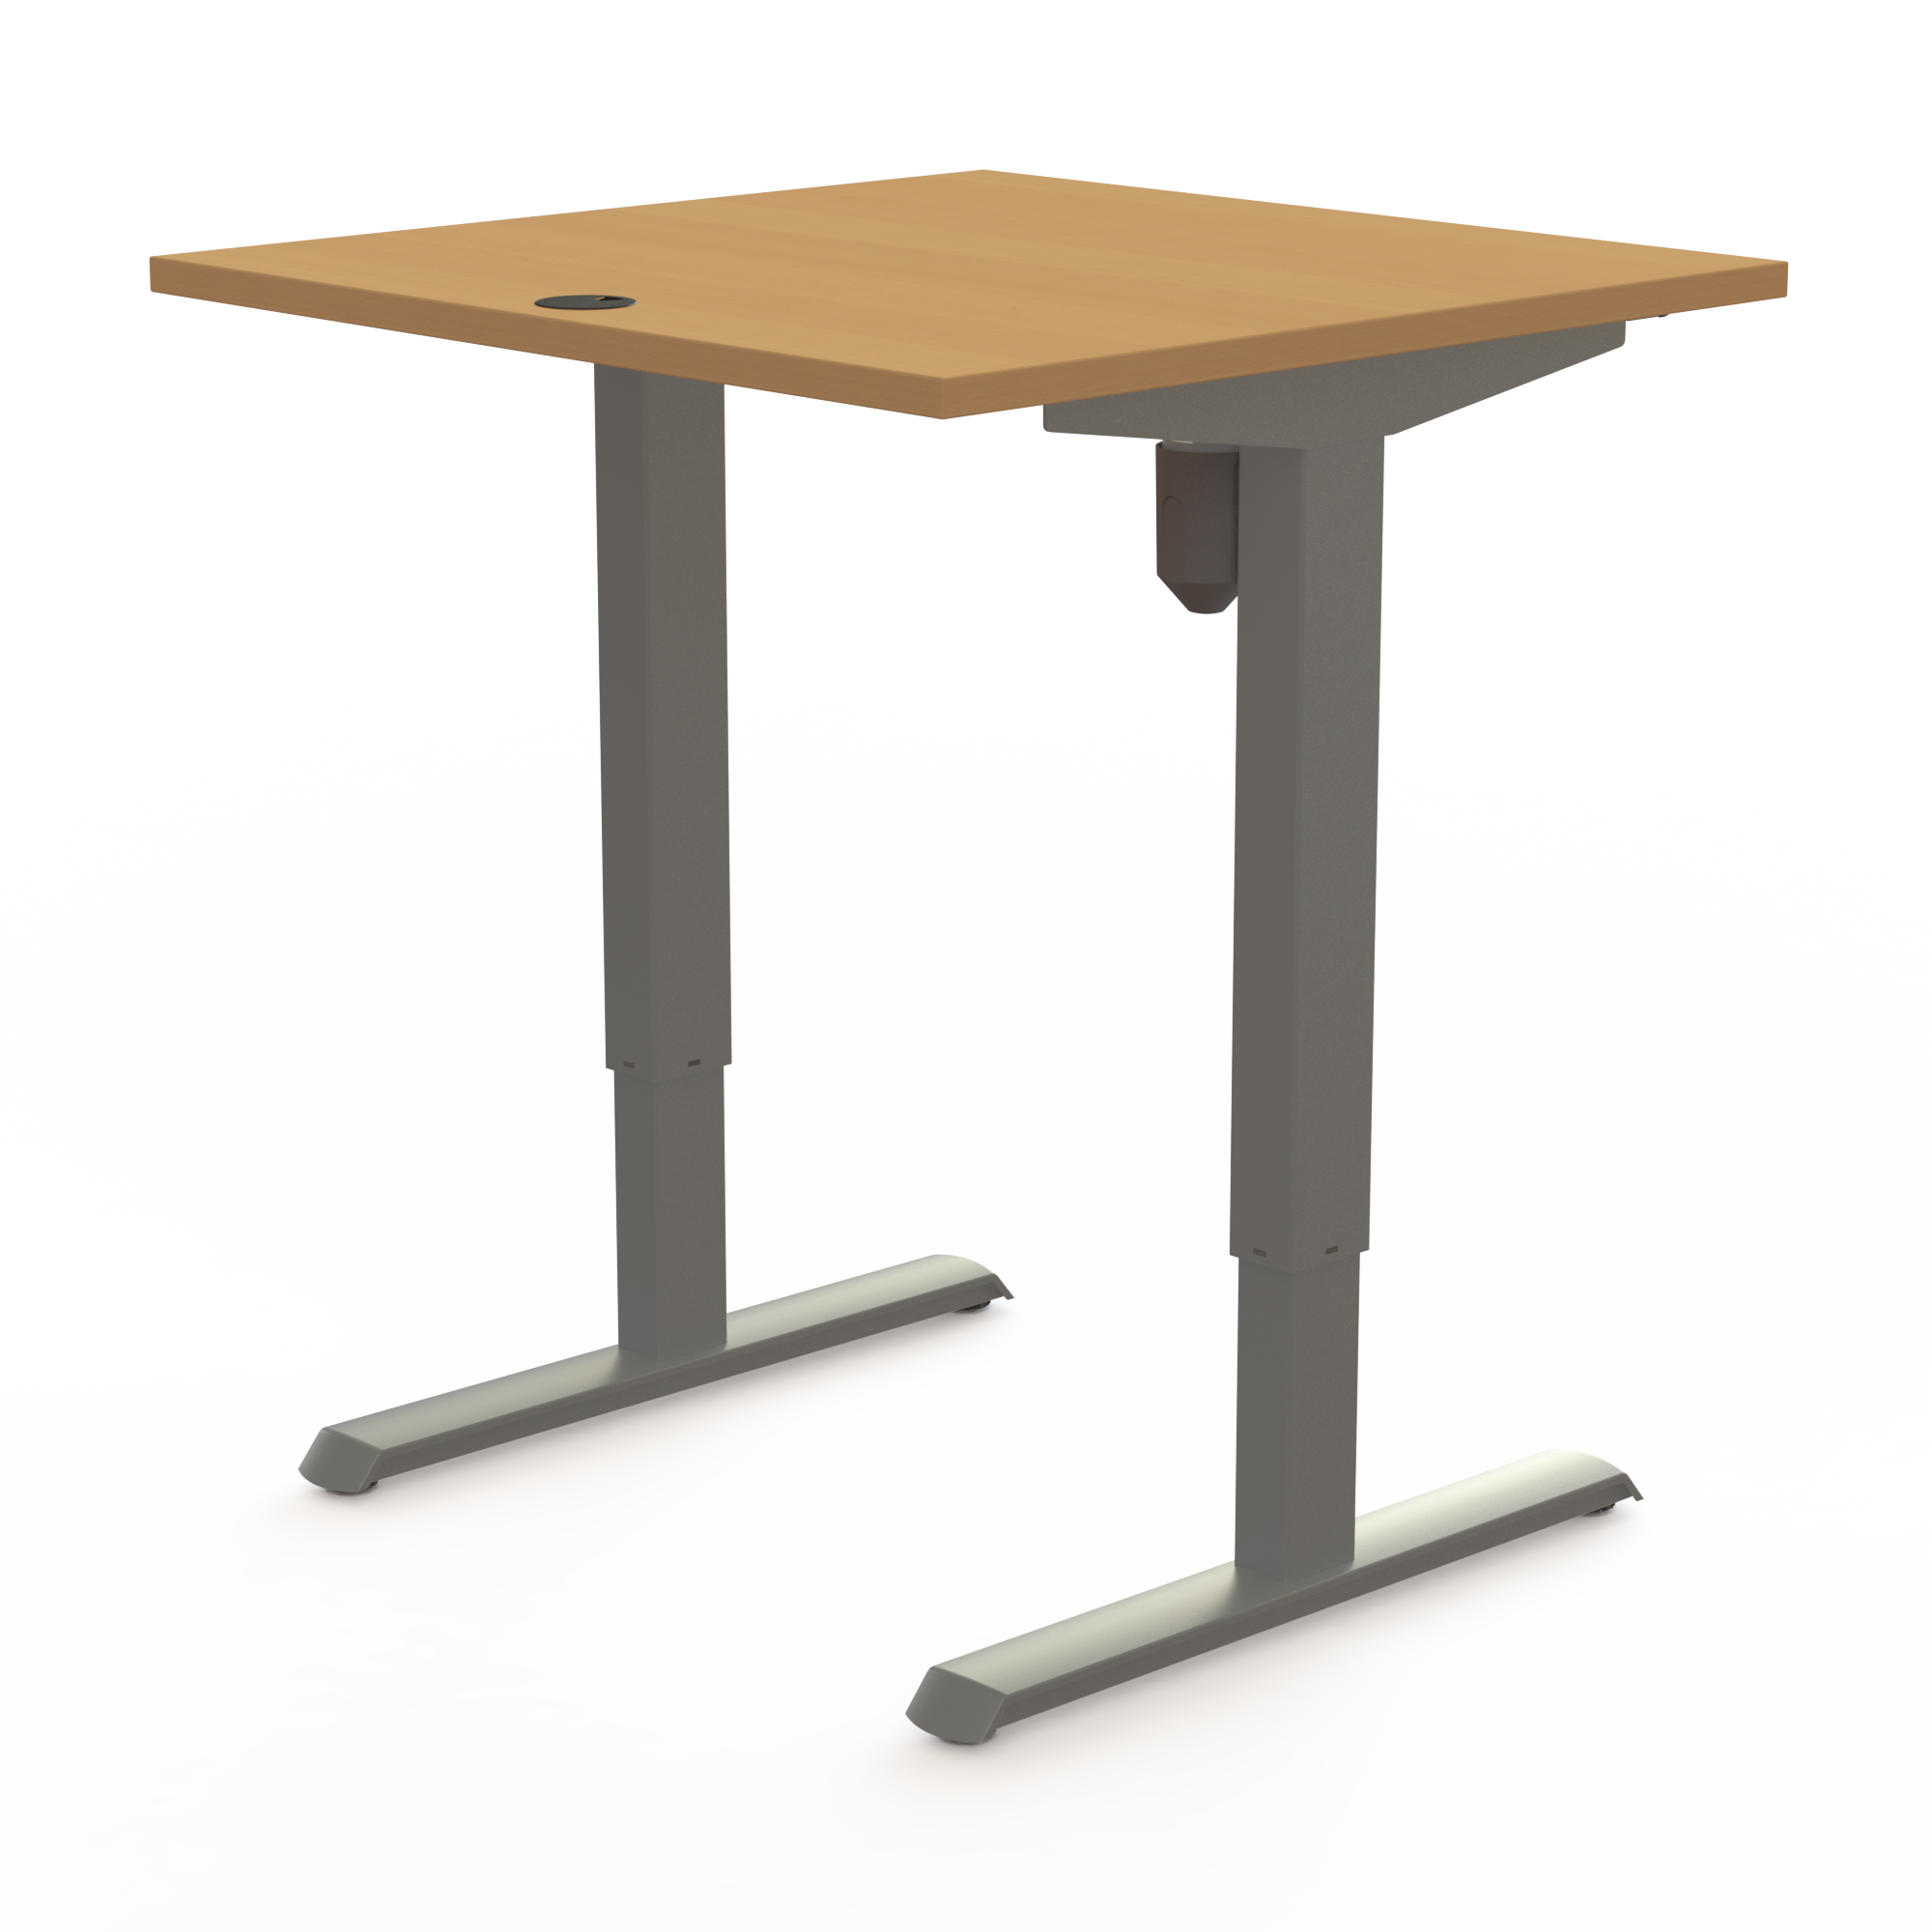 Schreibtisch steh/sitz | 80x80 cm | Buche mit silbernem Gestell